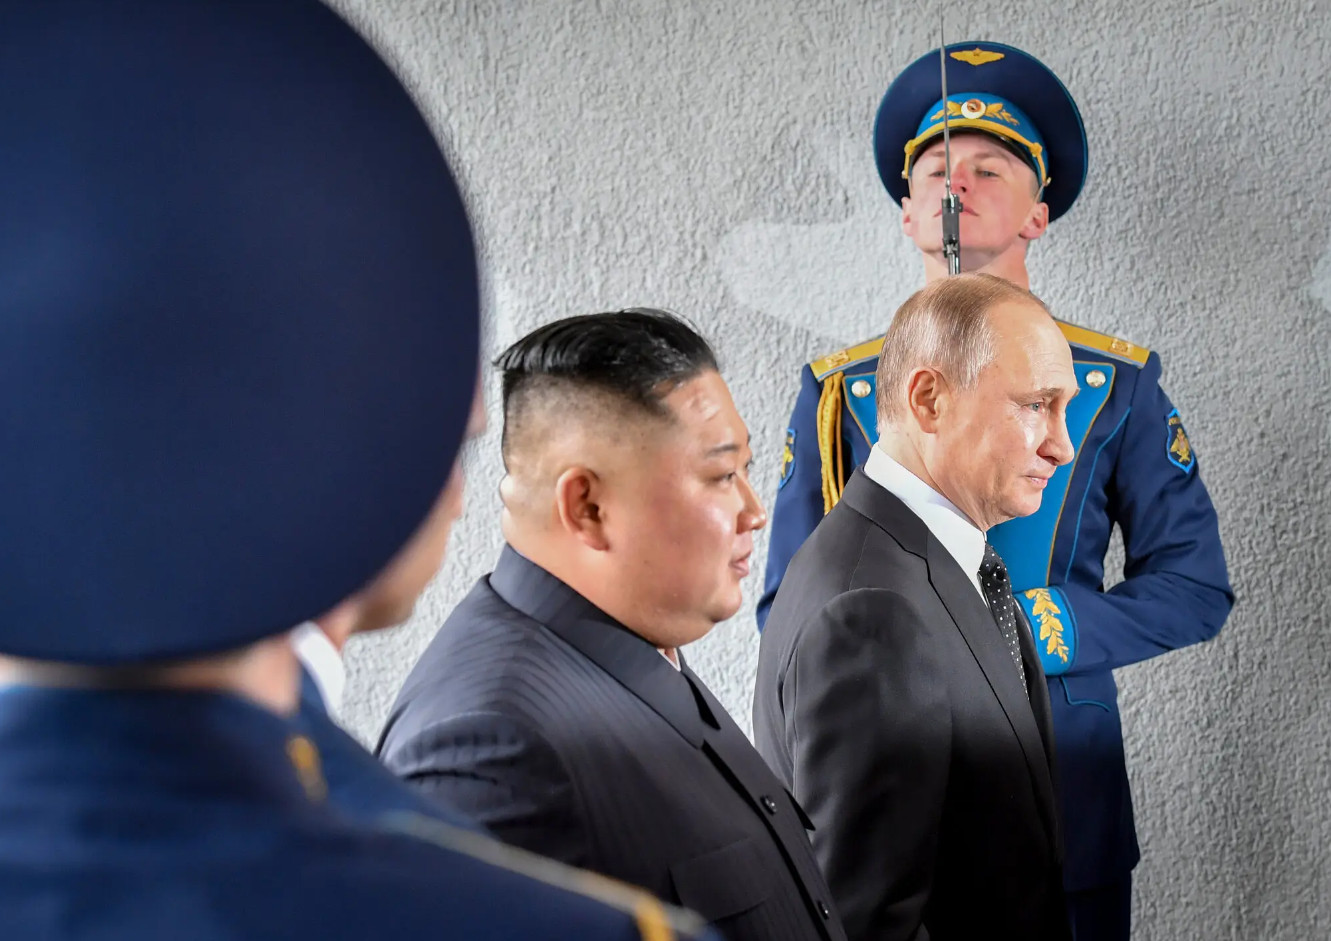 Φίλοι από ανάγκη ο Βλαντιμίρ Πούτιν και ο Κιμ Γιονγκ Ουν «απειλούν» τη Δύση - Τι θα συζητήσουν